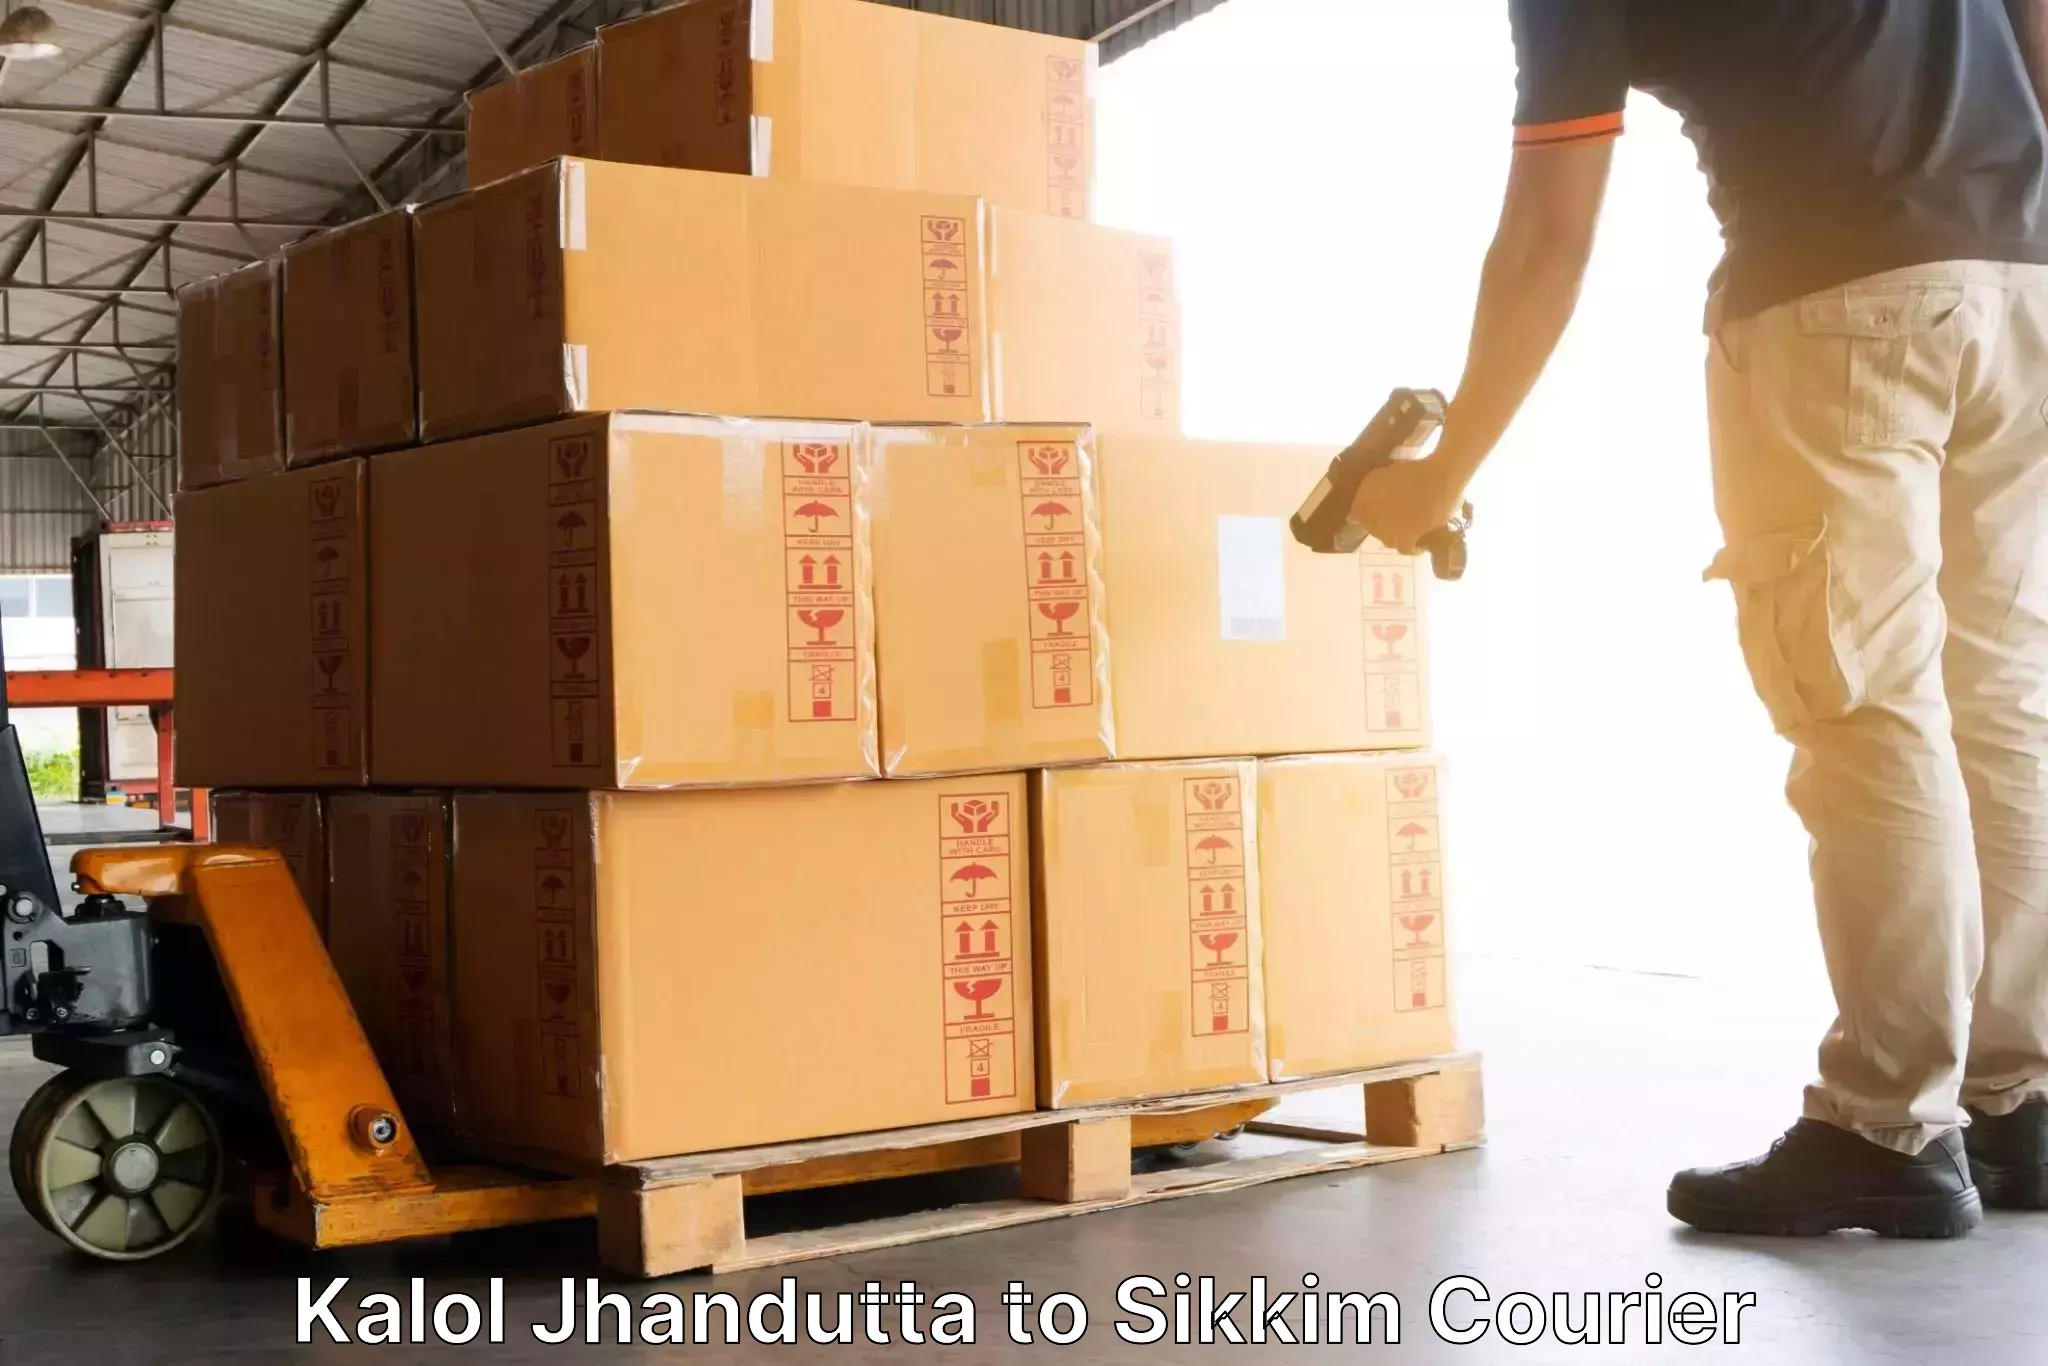 Premium courier services Kalol Jhandutta to Namchi